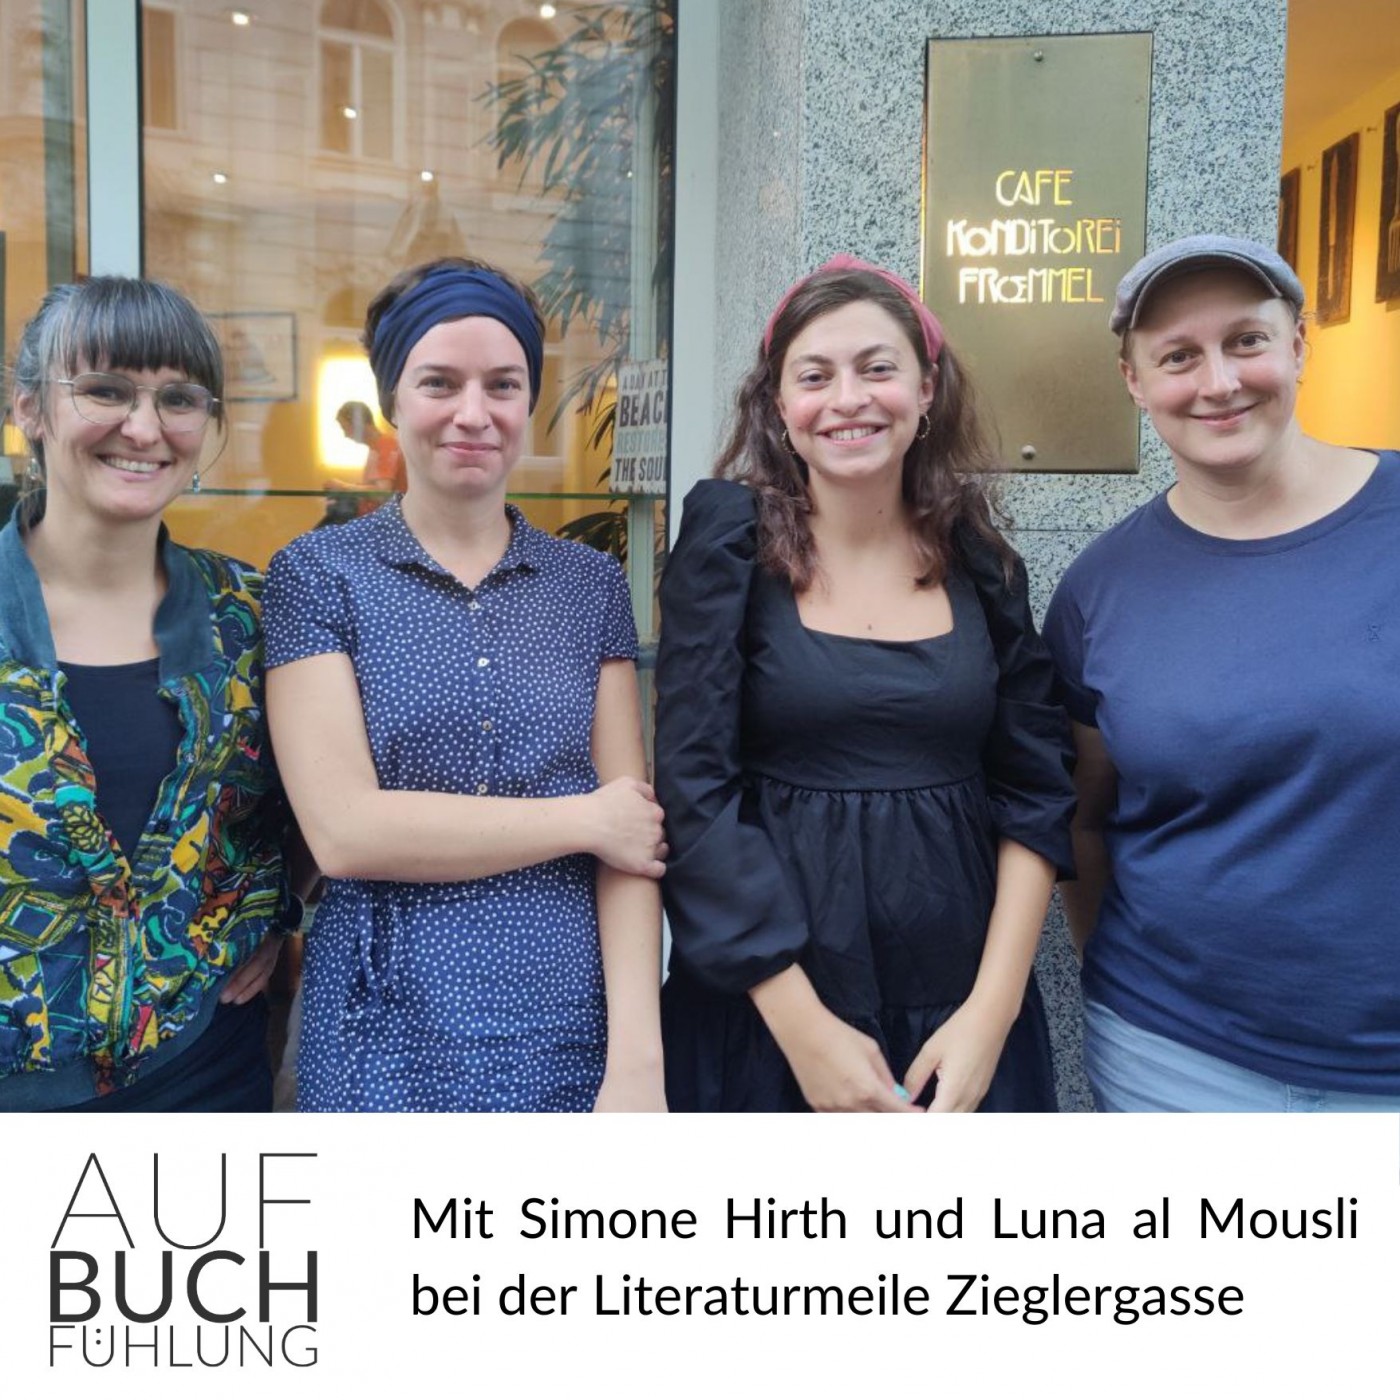 Mit Simone Hirth und Luna al Mousli bei der Literaturmeile Zieglergasse